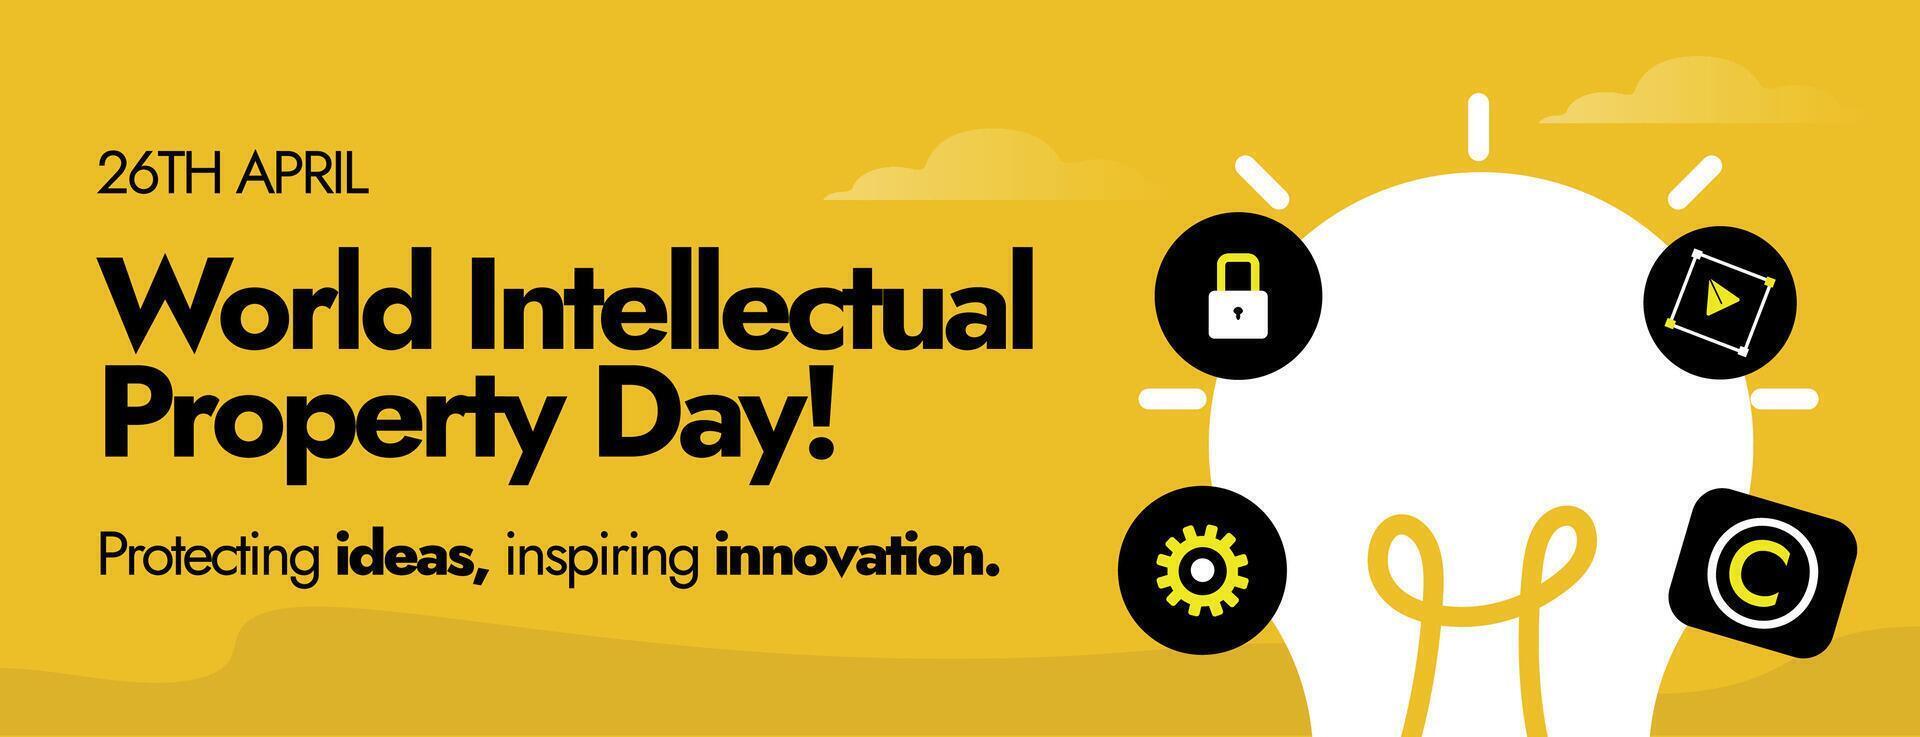 26 abril mundo intelectual propiedad día. mundo intelectual propiedad día celebracion cubrir a promover el importancia de equilibrado ip. edificio nuestra común futuro con innovación y creatividad. vector